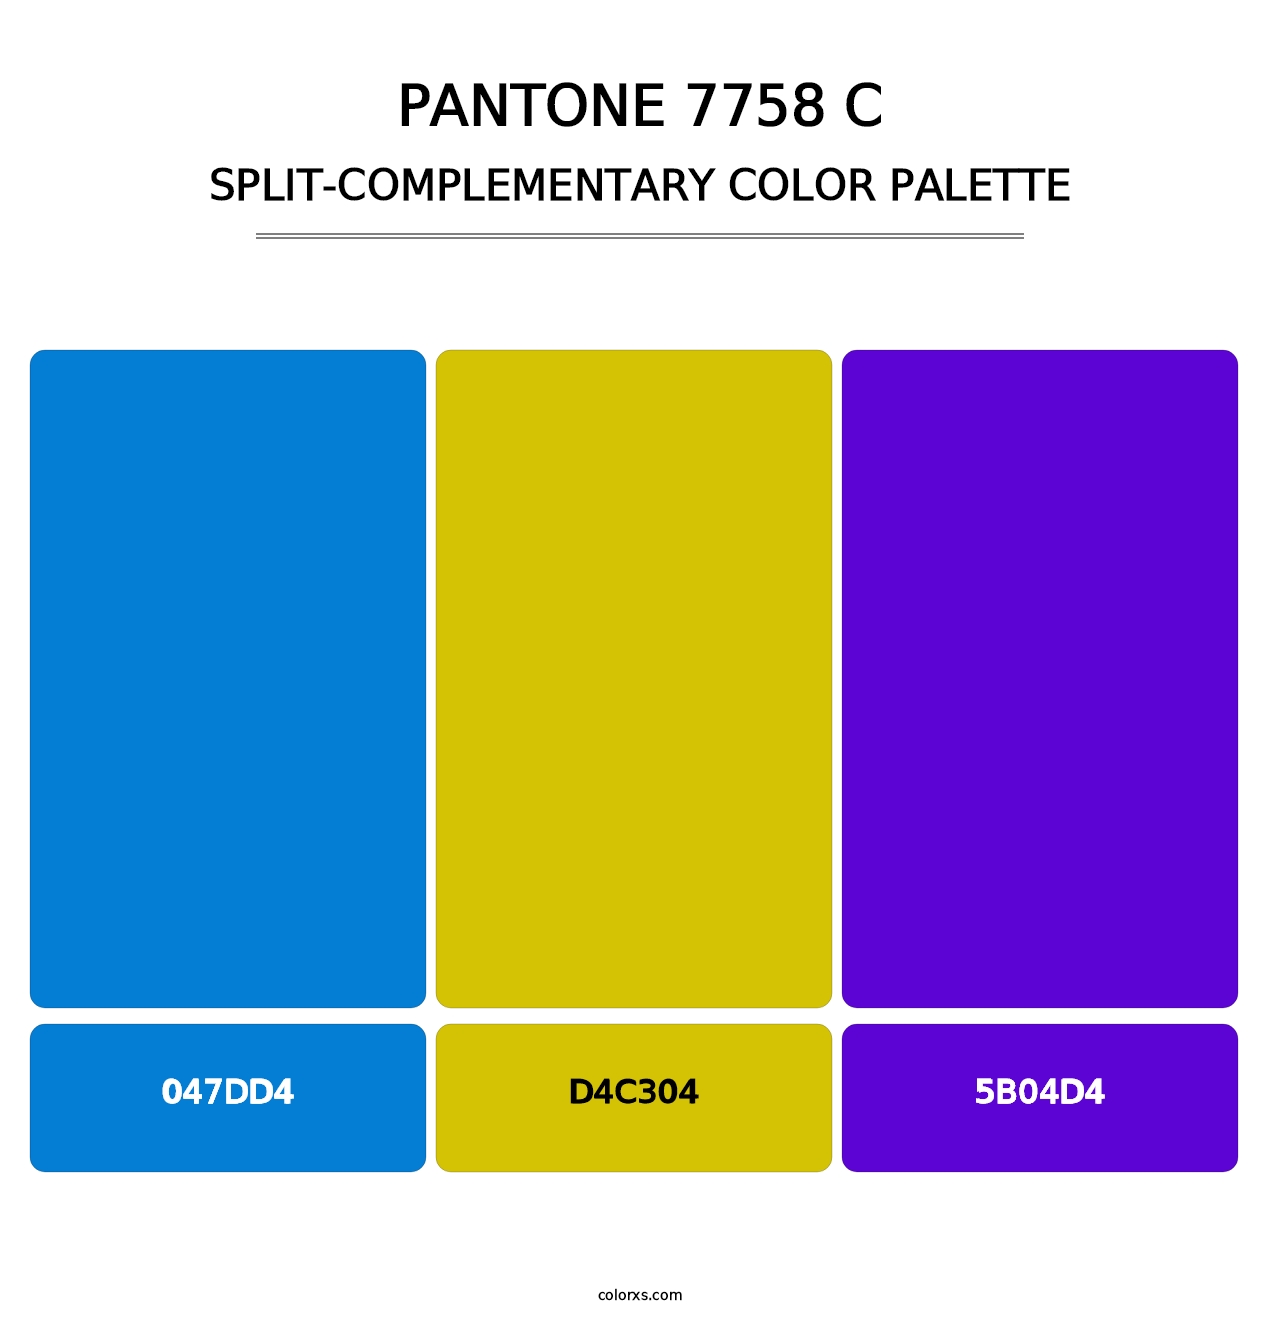 PANTONE 7758 C - Split-Complementary Color Palette